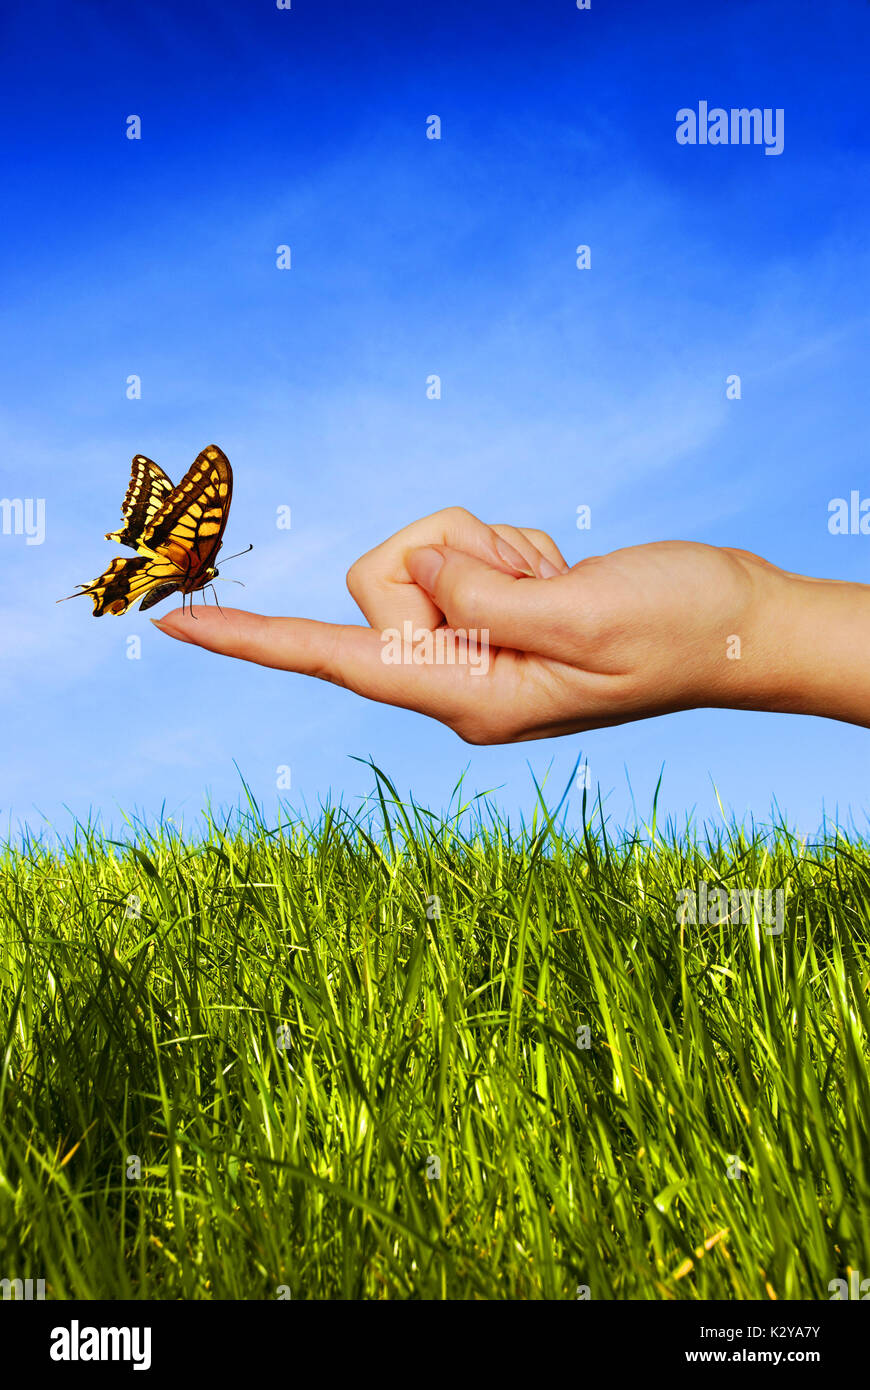 Schmetterling sitzt auf einer Frau Finger, Phantasie-Konzept Stockfoto